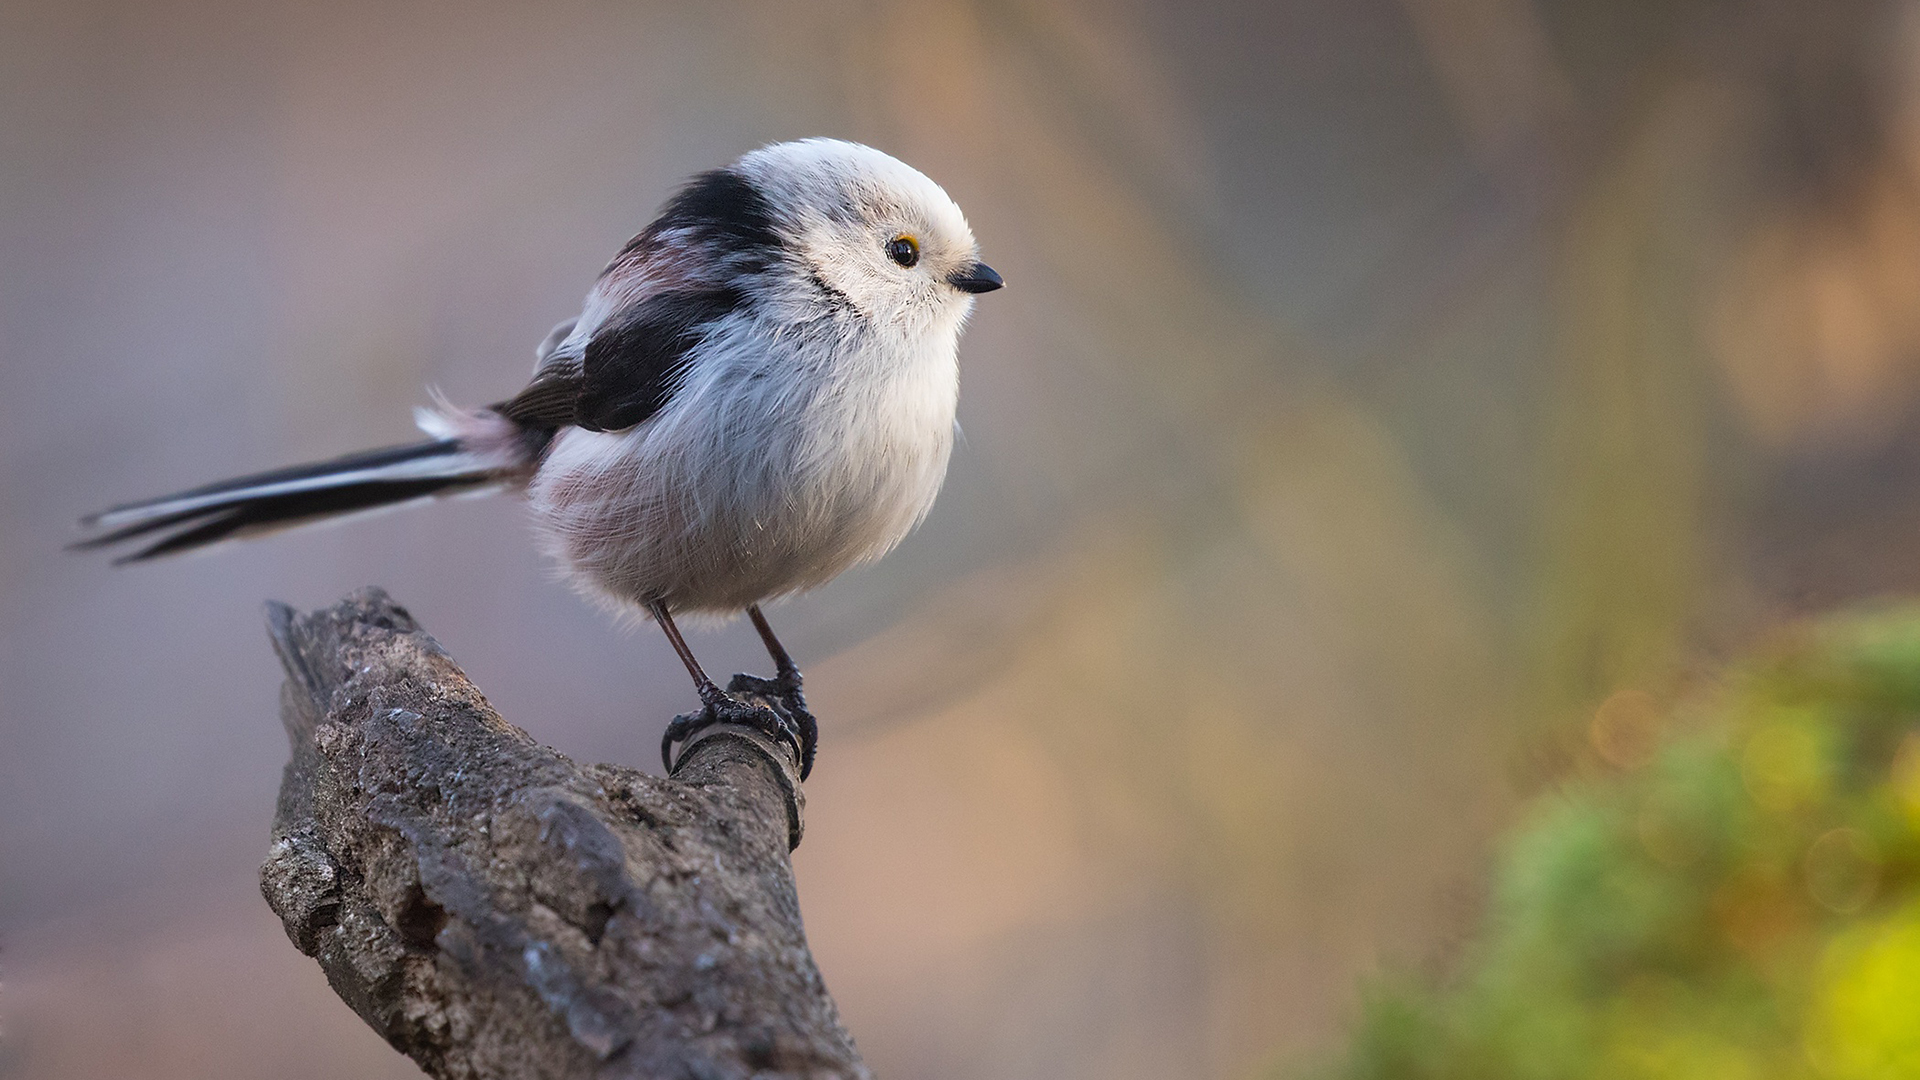 White Black Little Bird Is Standing On Tree Trunk In Blur Wallpaper 2K Birds